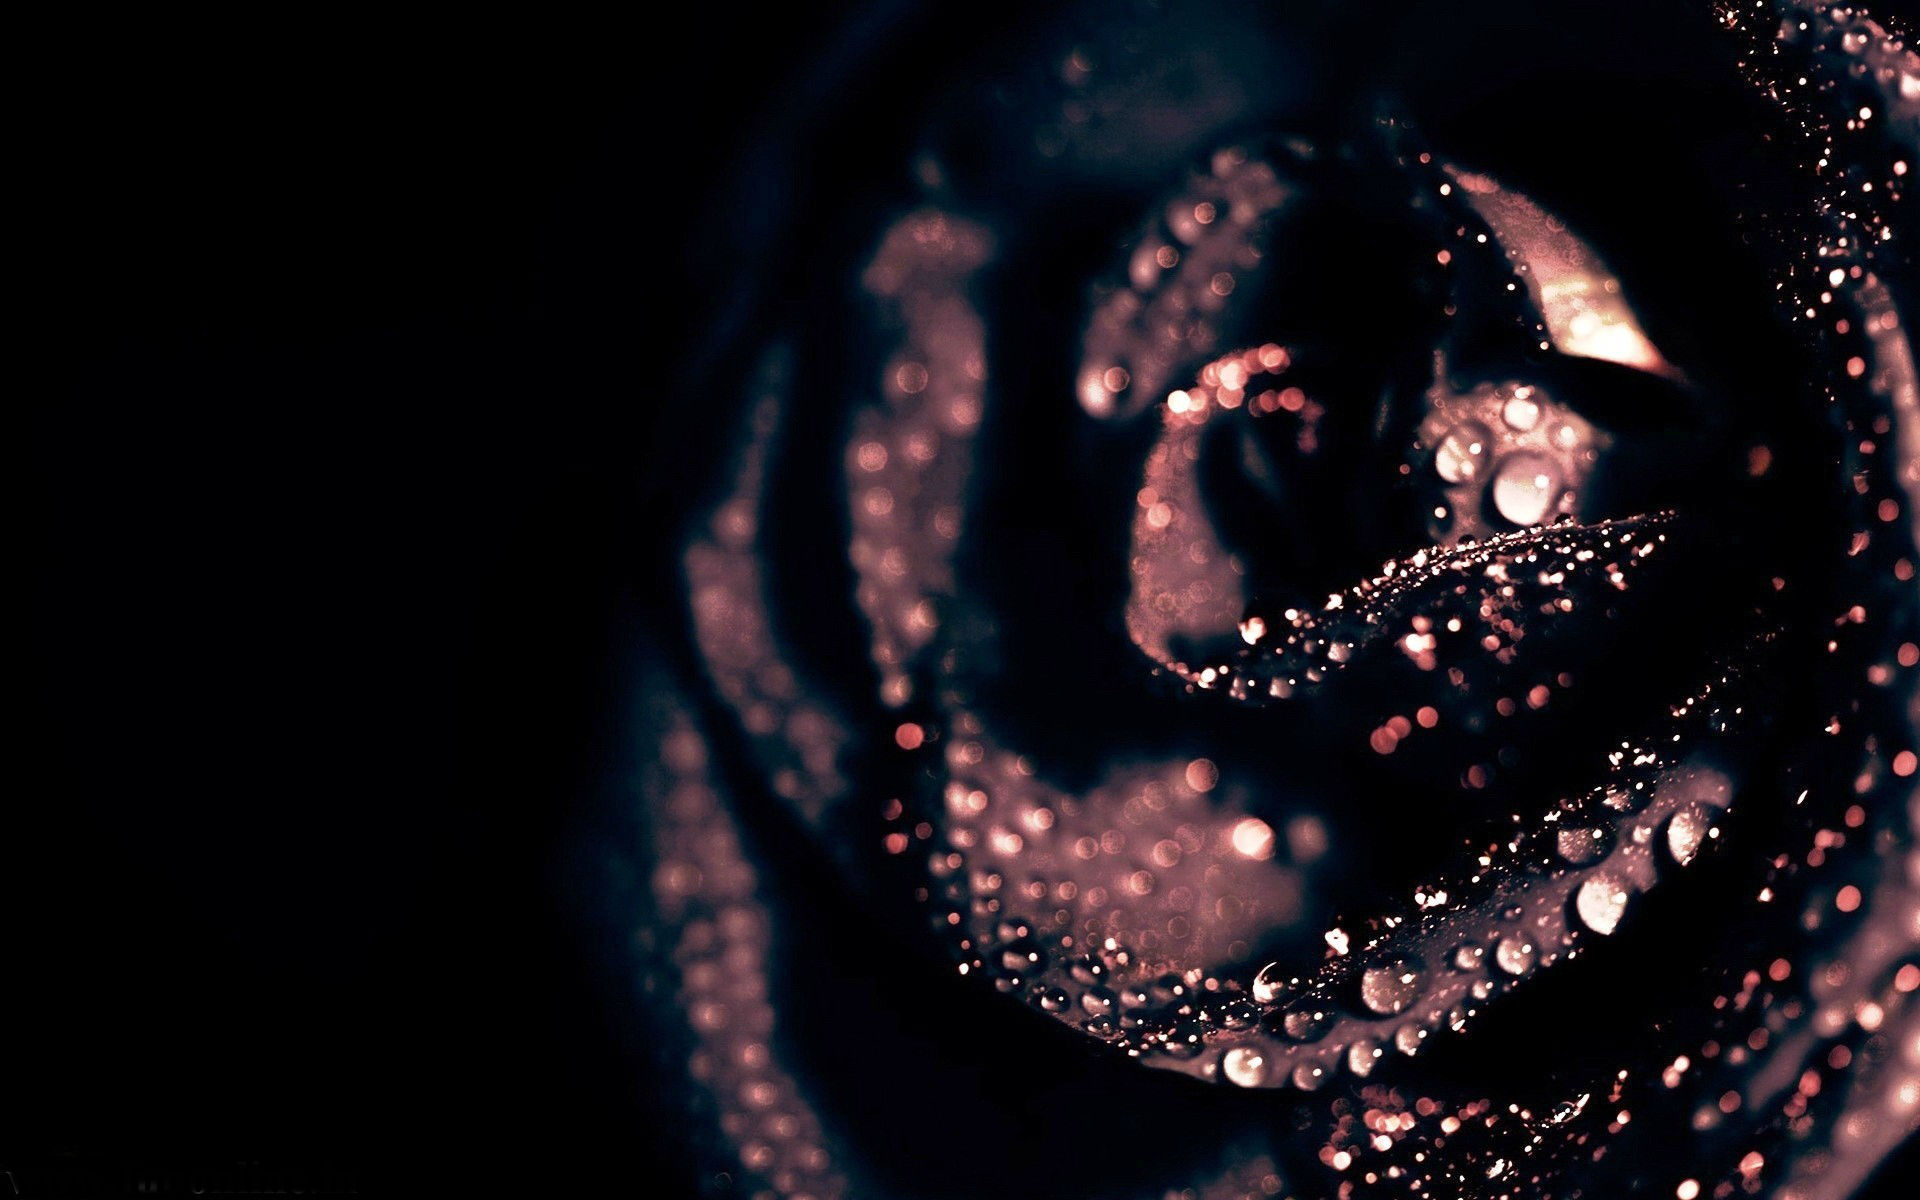 Black Roses HD Wallpaper S